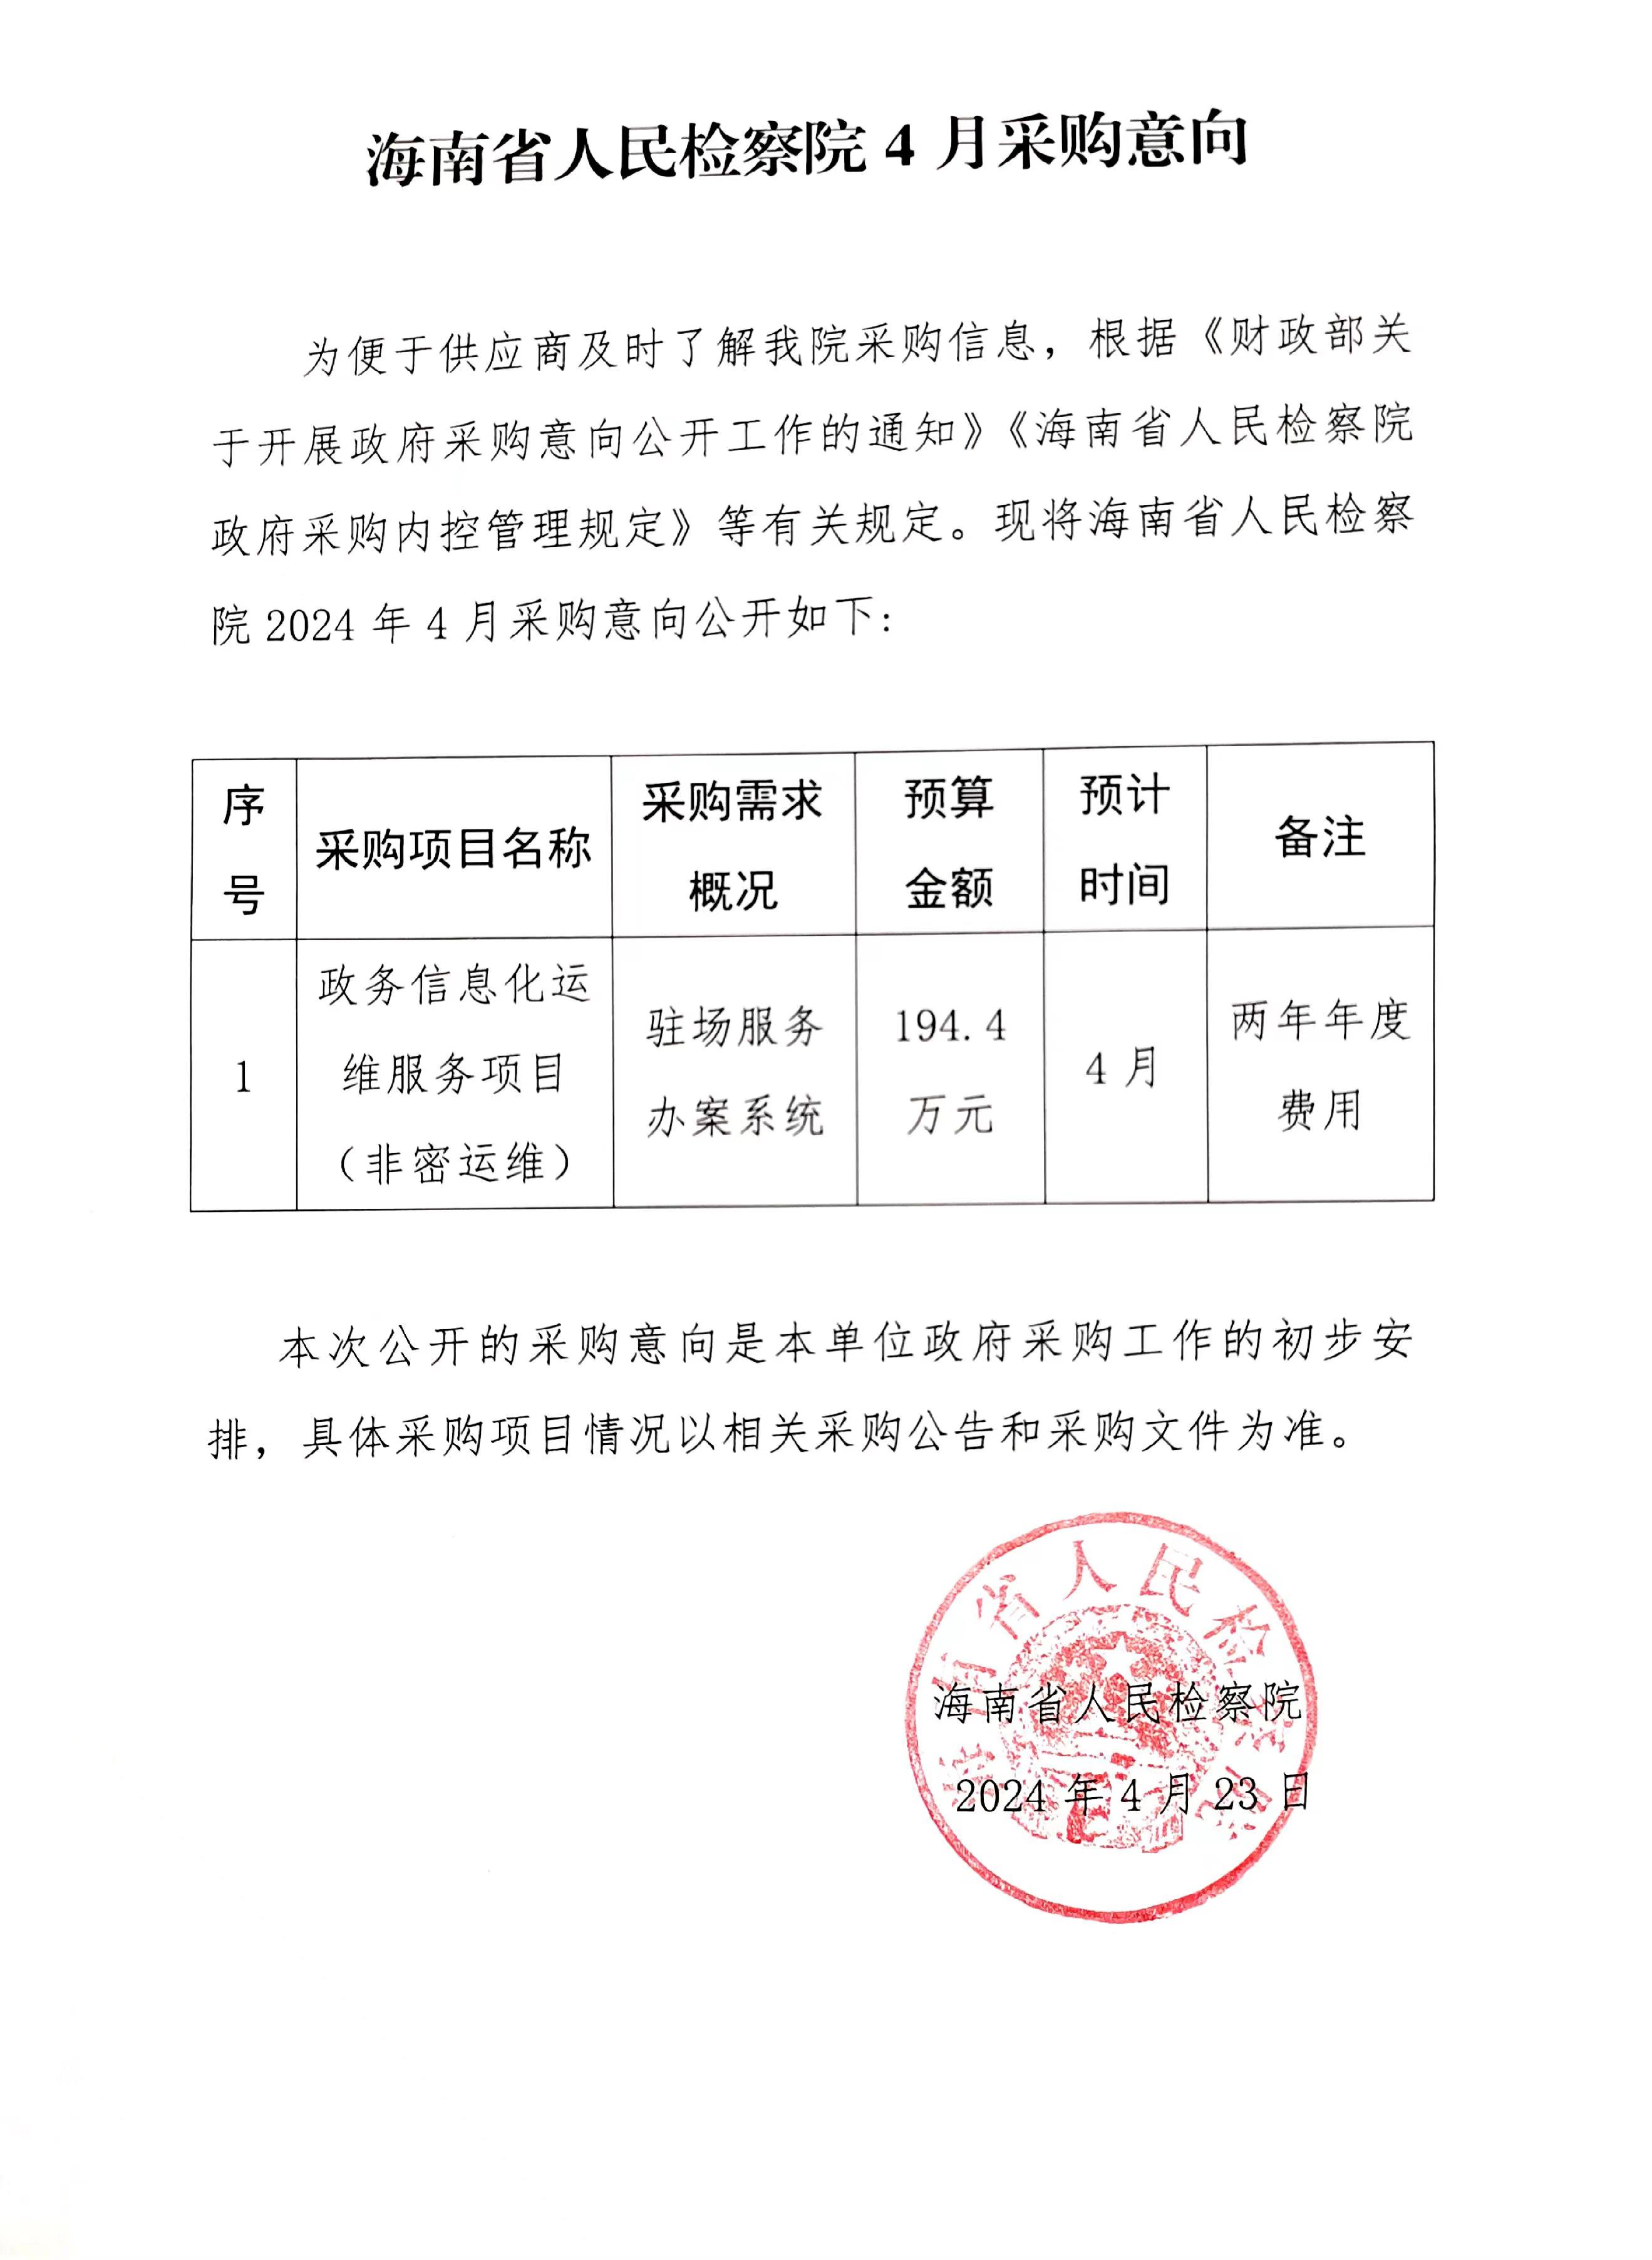 海南省人民检察院4月采购意向.jpg